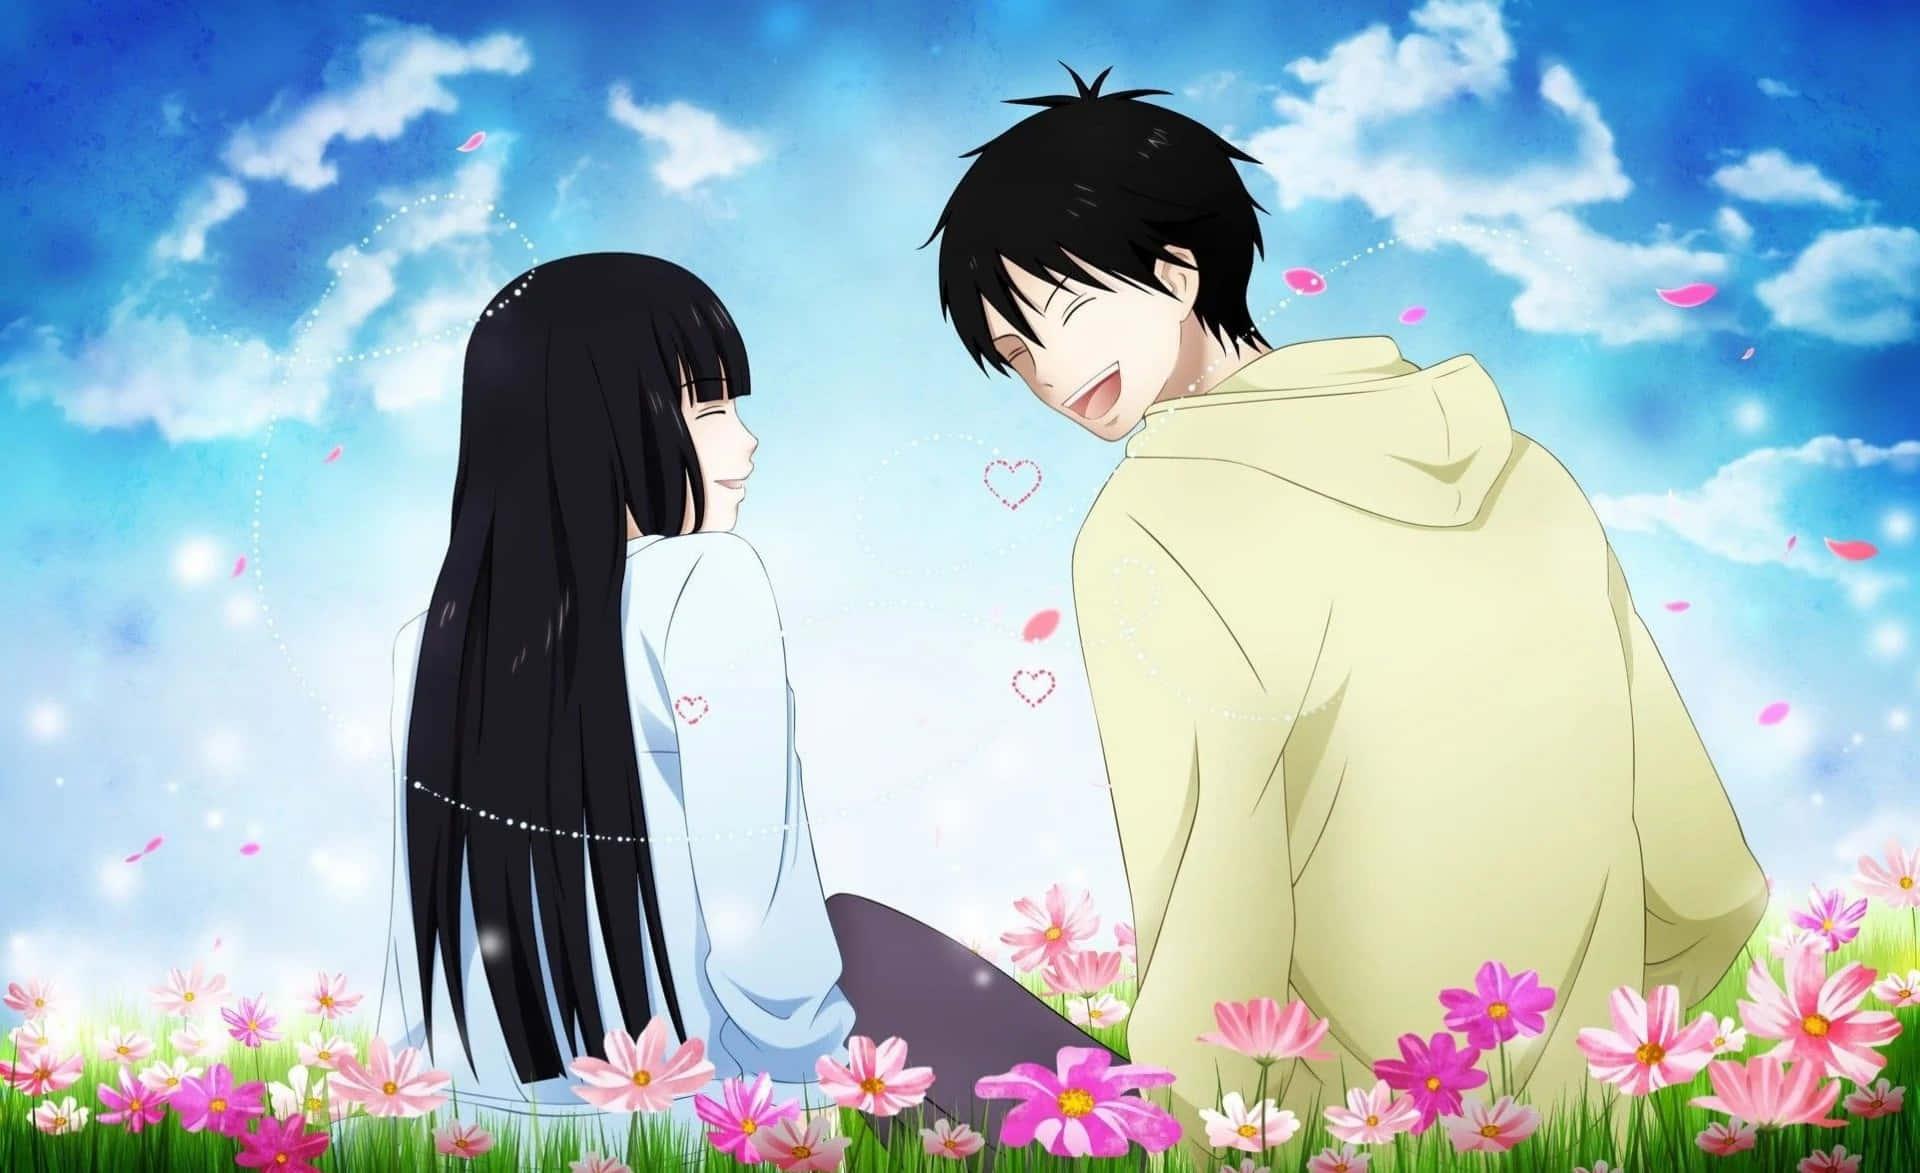 Doispersonagens De Anime Em Um Abraço Apaixonado.